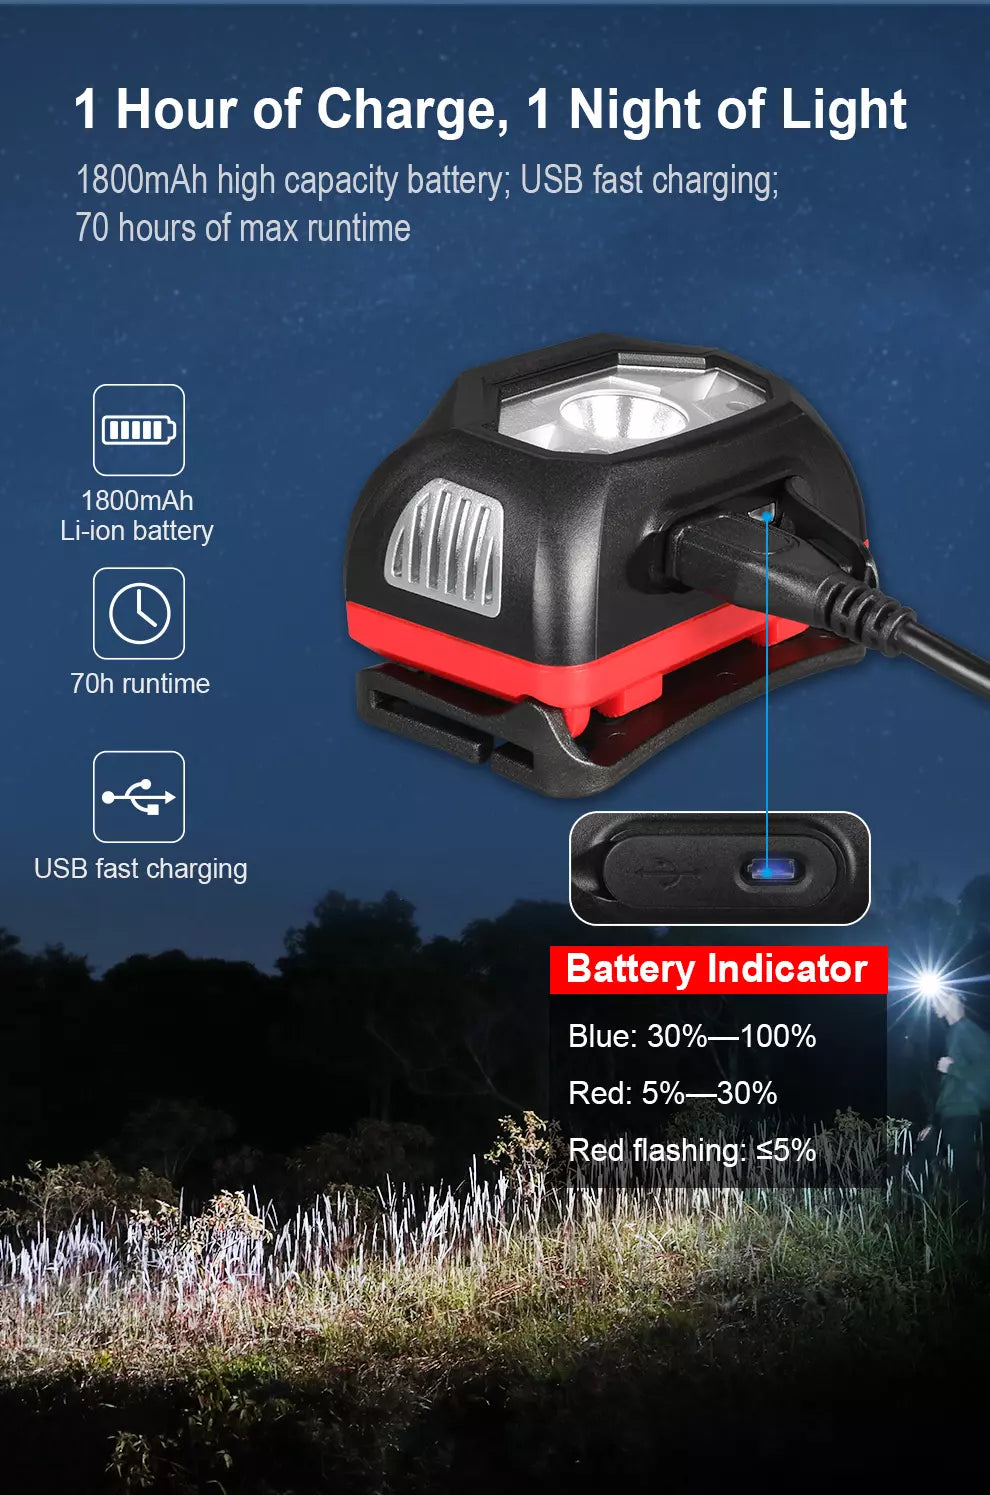 Klarus HM1 440 Lumen Smart-Sensing Rechargeable Lightweight Headlamp